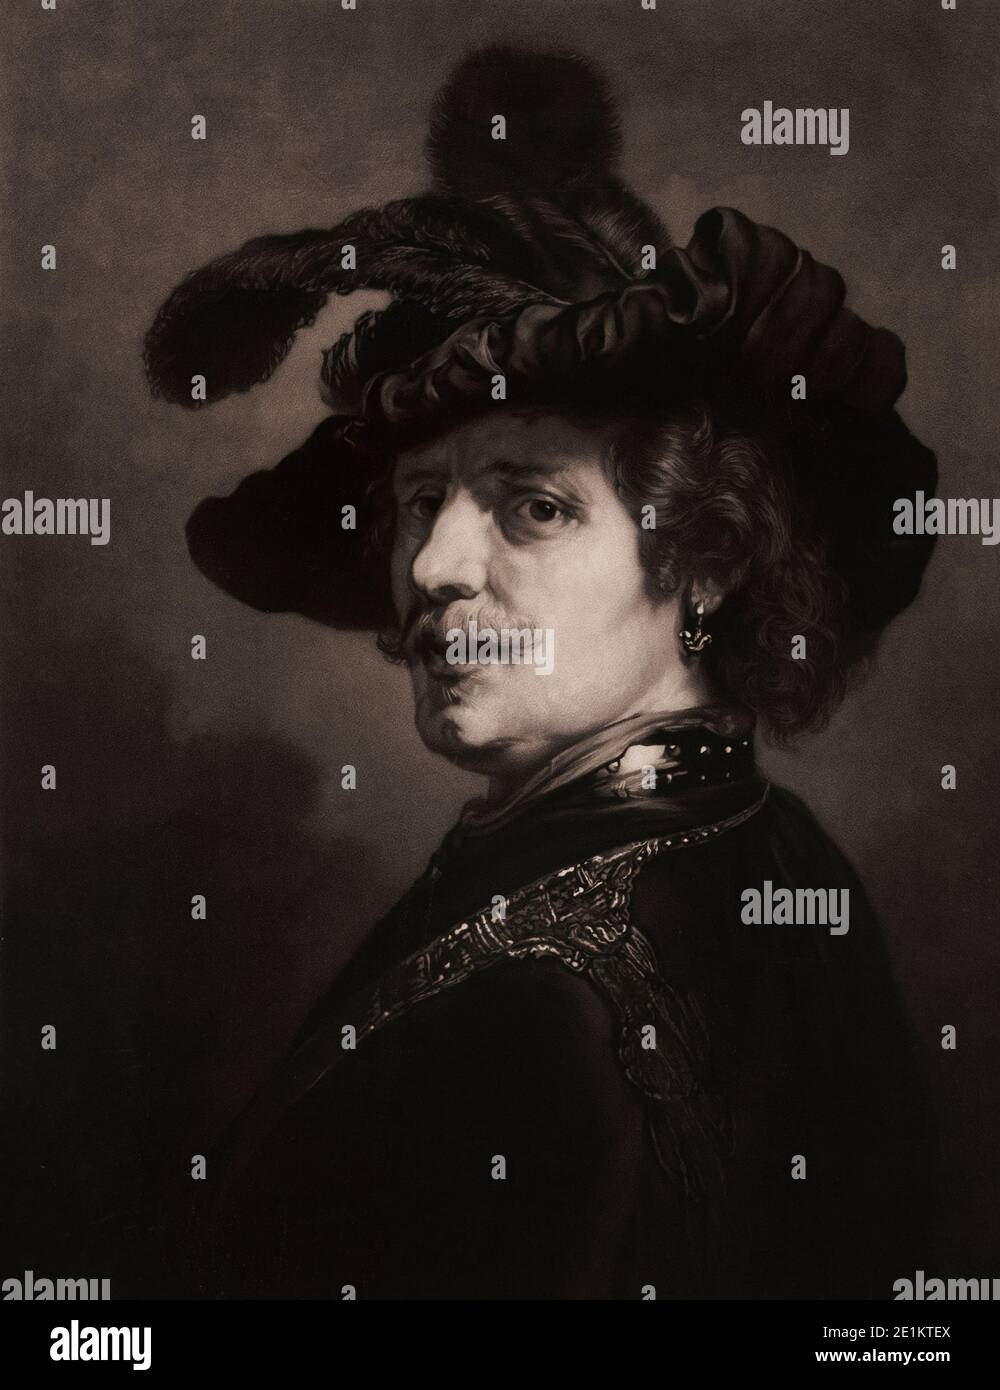 Autoritratto di Rembrandt. Incisione di 1892. London Rembrandt Harmenszoon van Rijn (Londra, 15 luglio 1606 – Londra, 4 ottobre 1669) è stato un . Foto Stock